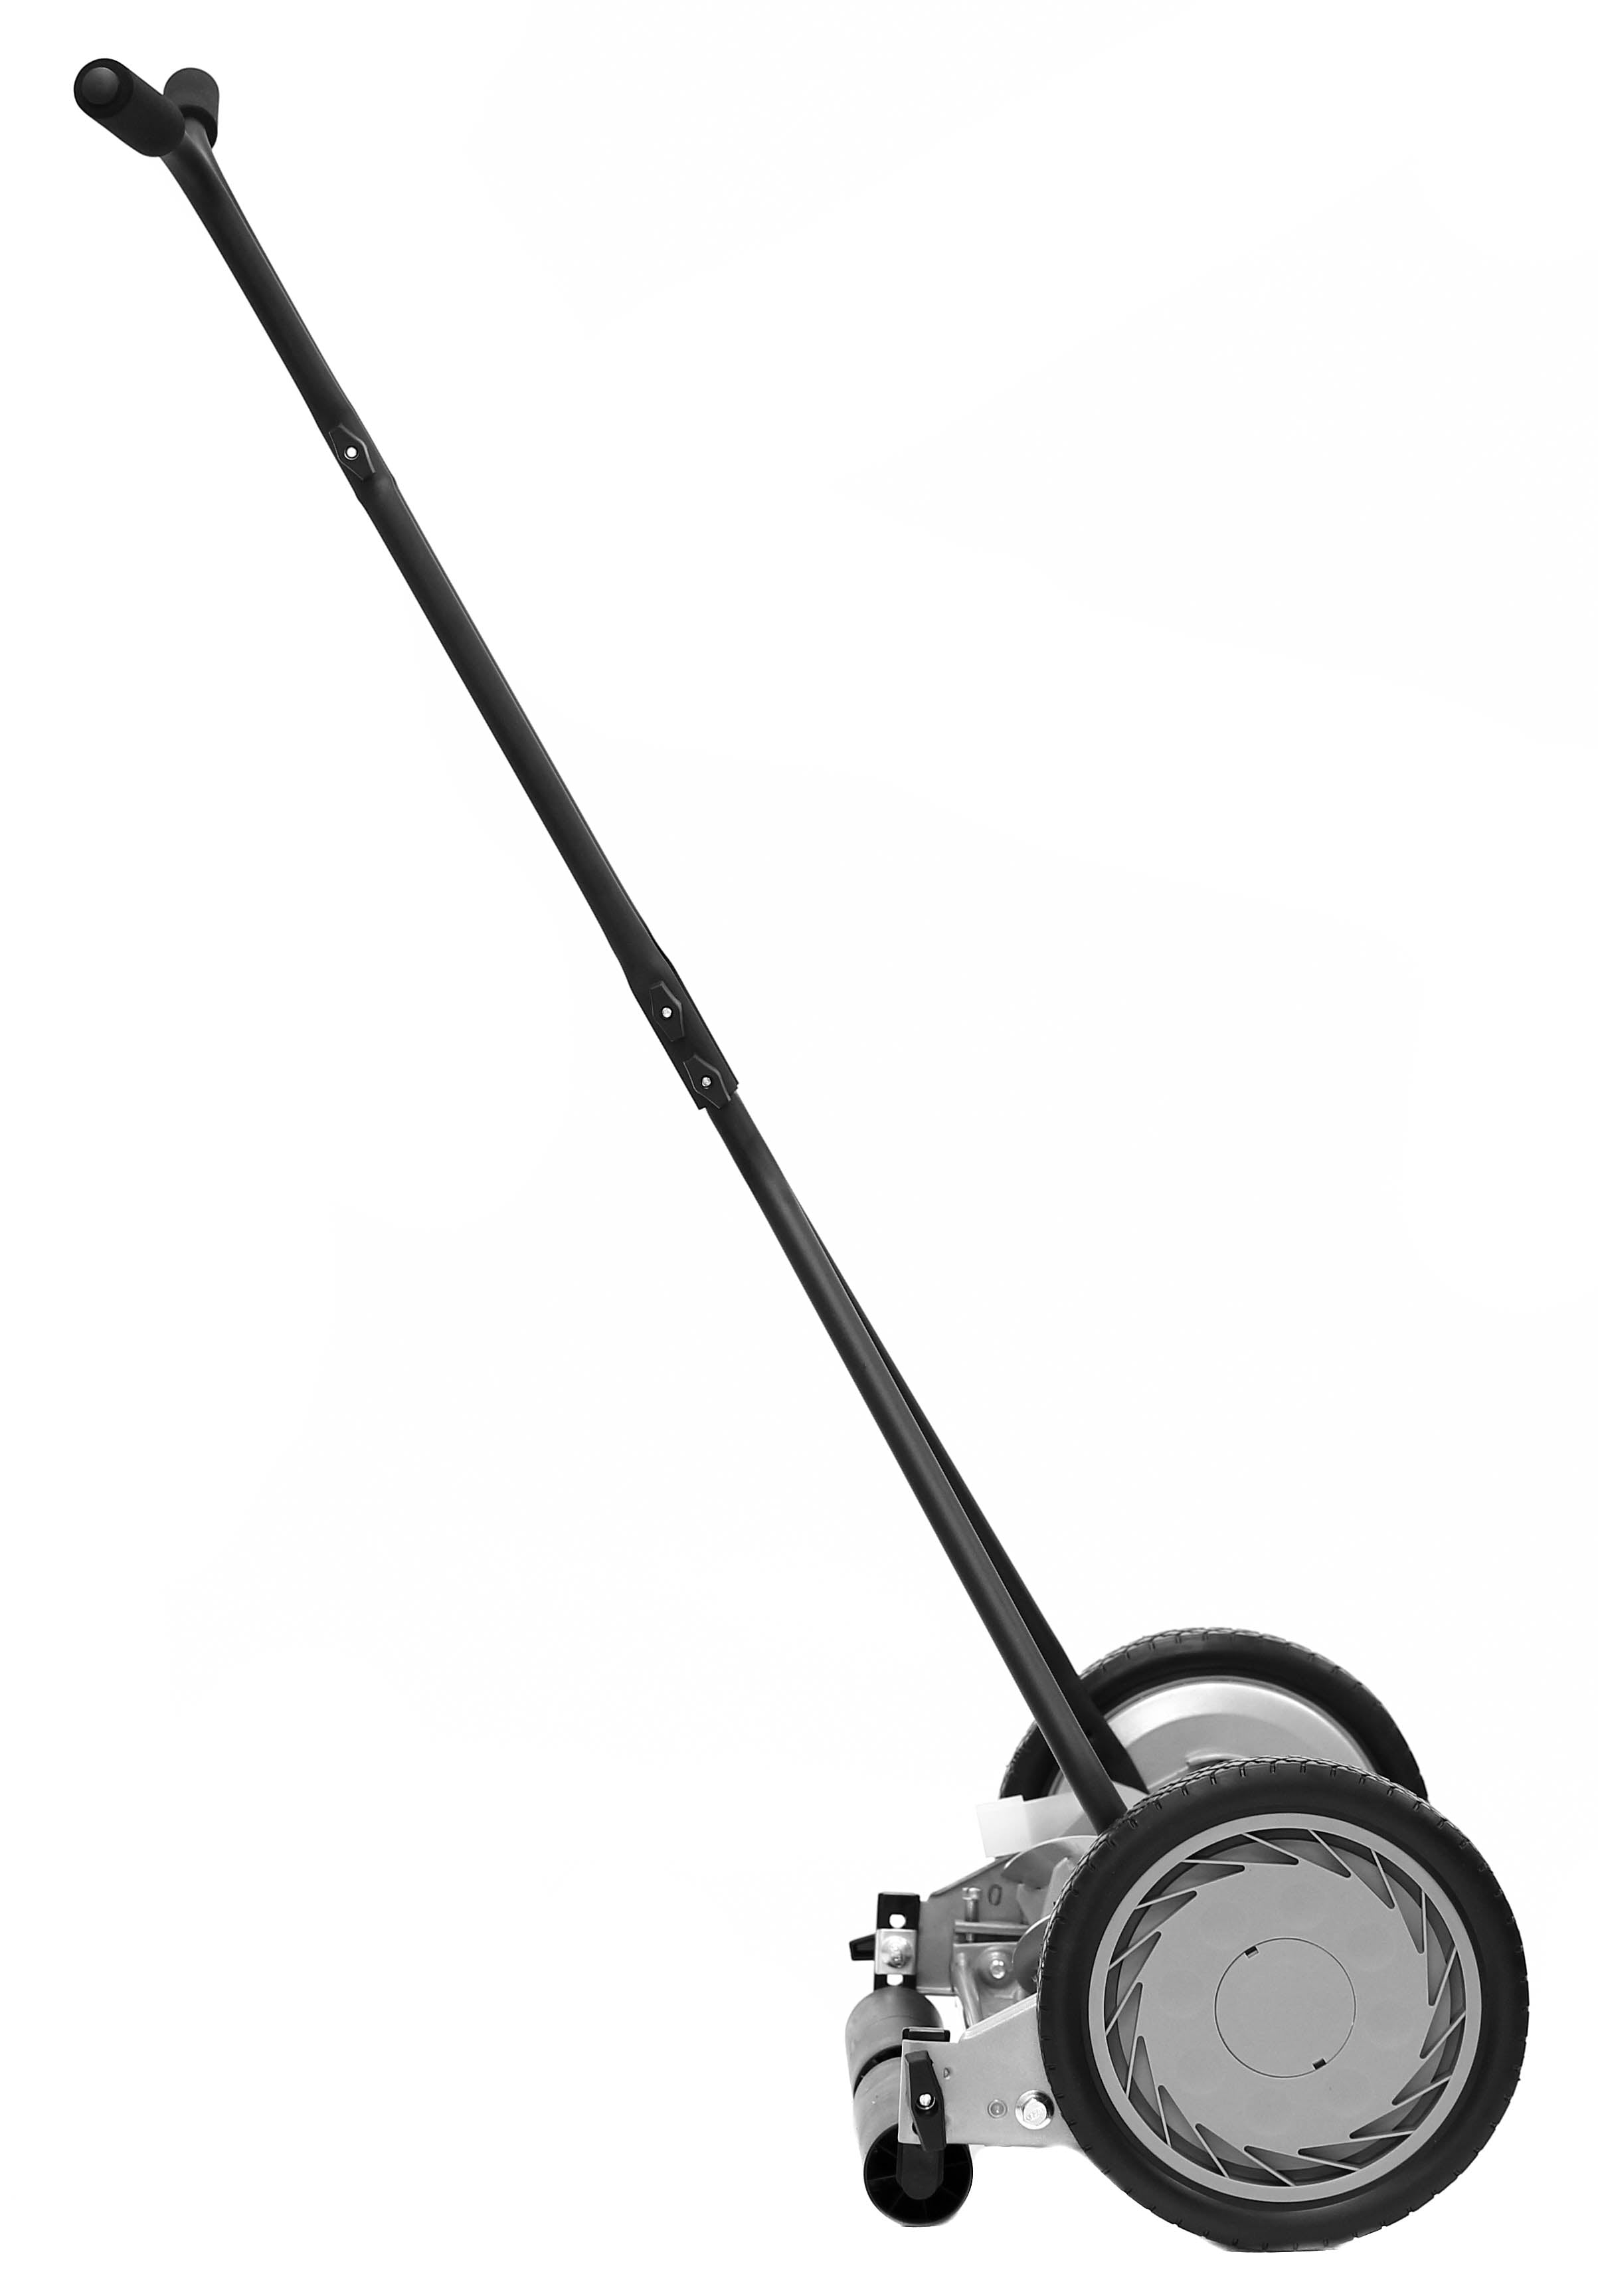 American Lawn Mower 16 Manual Reel Mower – American Lawn Mower Co. EST 1895